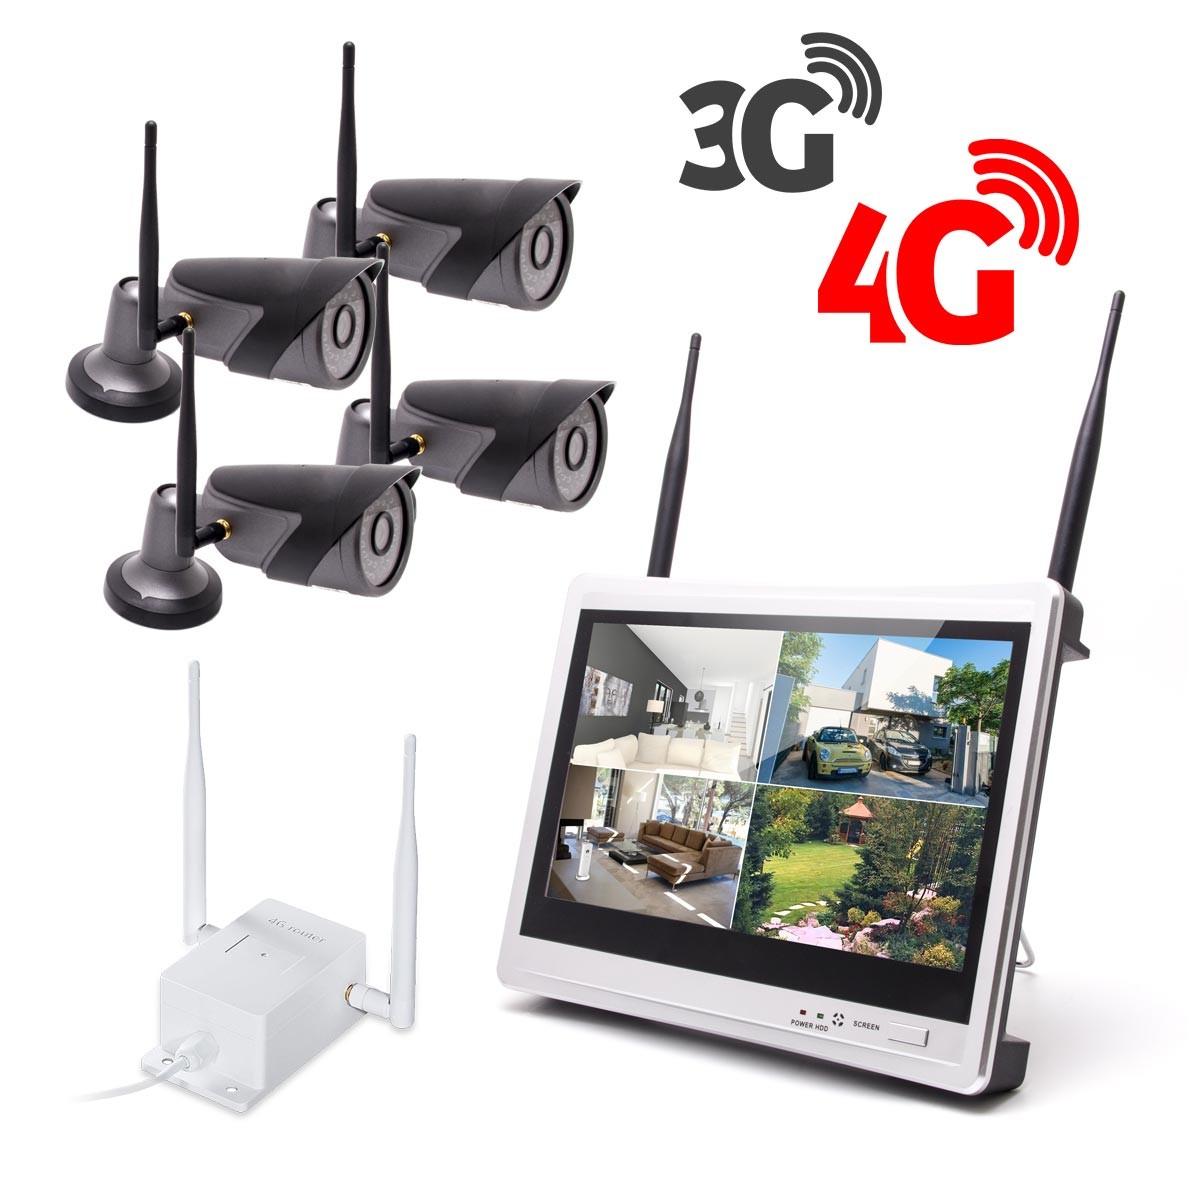 Kit vidéosurveillance 3G 4G avec 4 caméra WiFi HD 1080P et un écran LCD 12.5 récepteur enregistreur HDD 1To